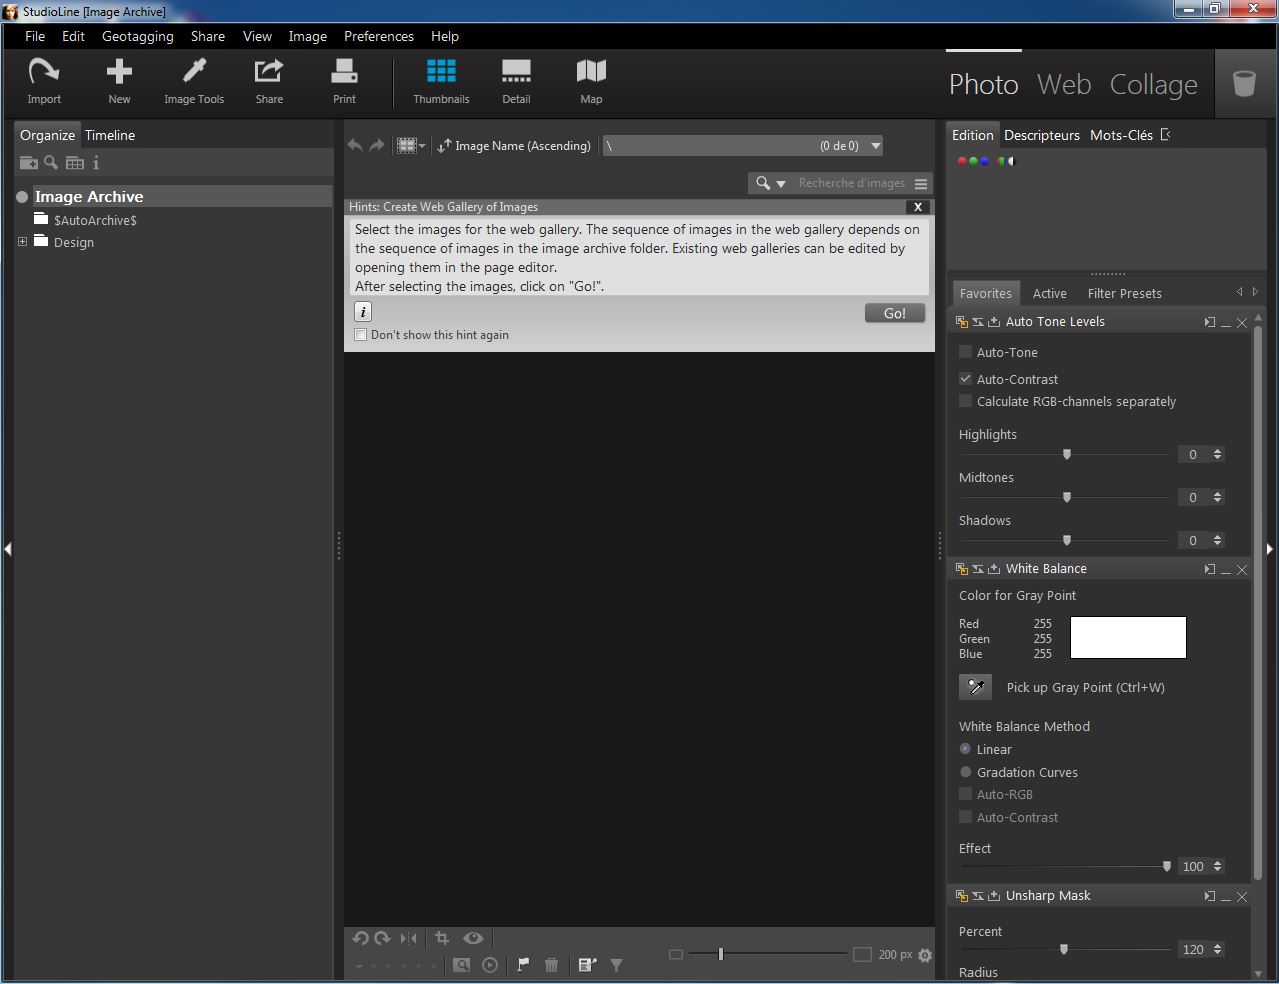 StudioLine Web Designer Pro 5.0.6 instal the new for windows